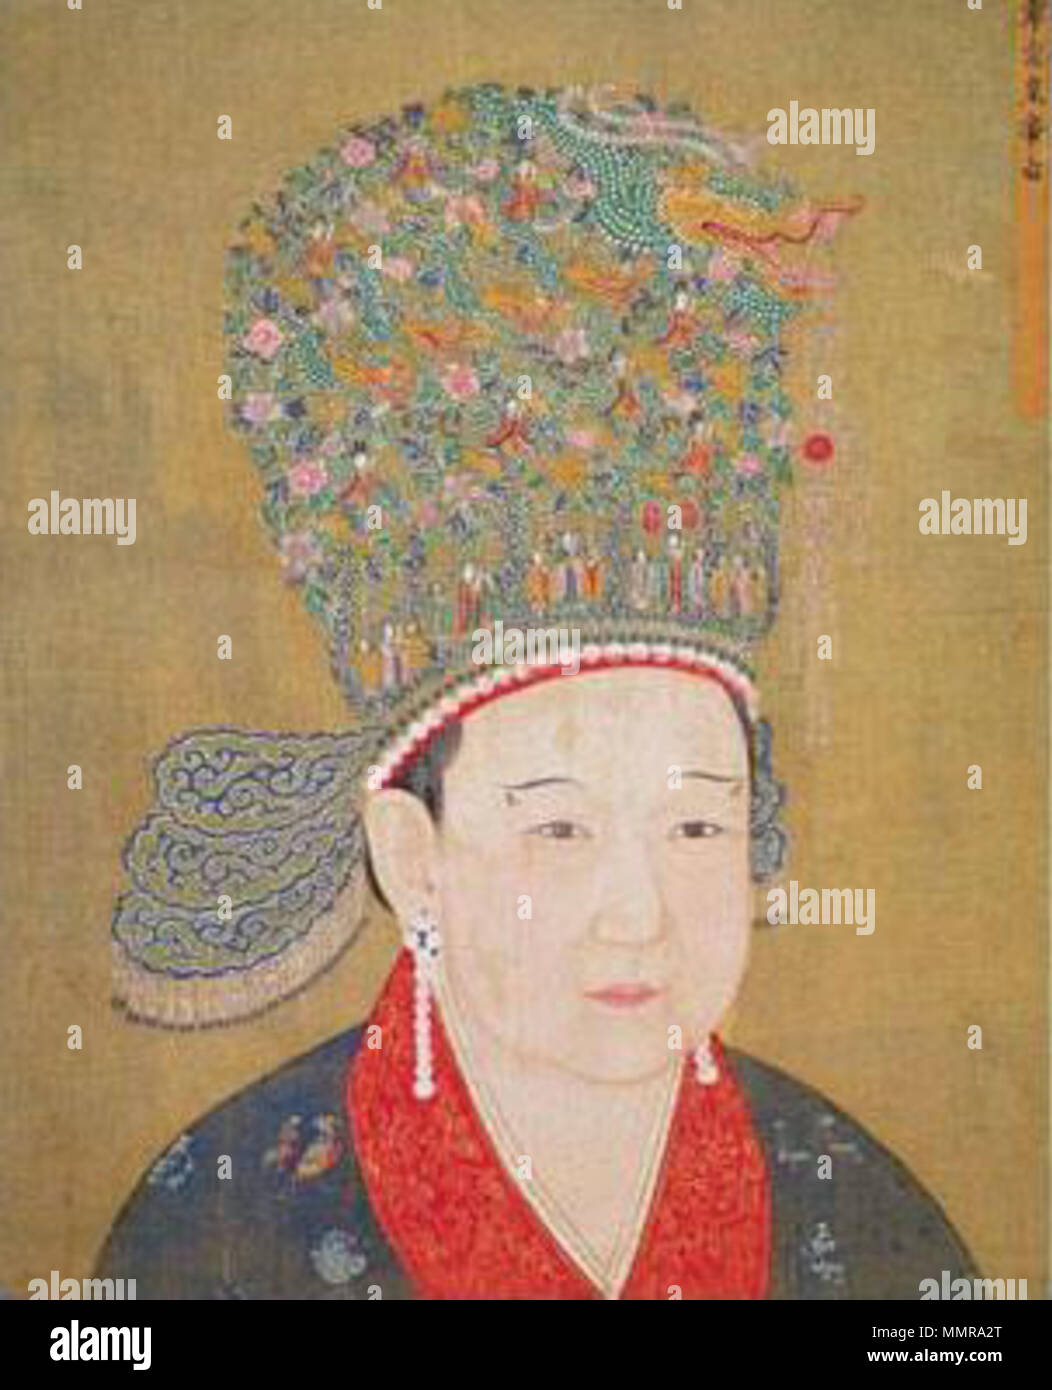 . Un dettaglio del dipinto seduto Ritratto di Ningzong's imperatrice, raffigurante l'Imperatrice Yang (1162-1233), una consorte di Ningzong imperatore della dinastia Song. Seduto Ritratto di Ningzong's imperatrice ??????. Song Dynasty (960-1279). B Song Dynasty imperatrice di Ningzong Foto Stock